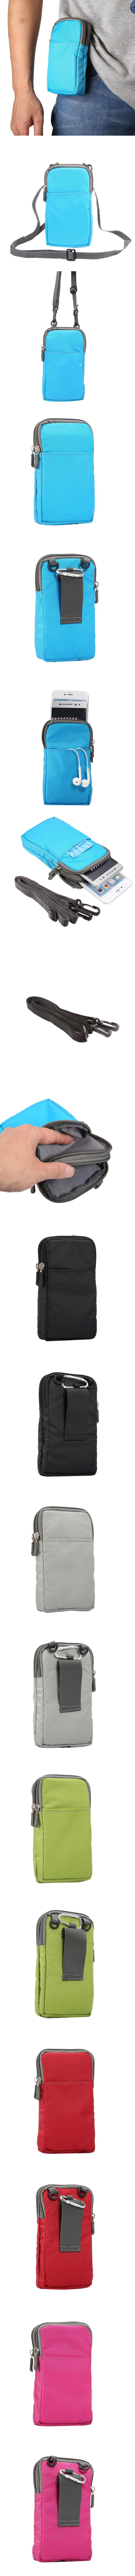 380-直式腰包-尼龍纖維多功能腰包手機袋收納袋